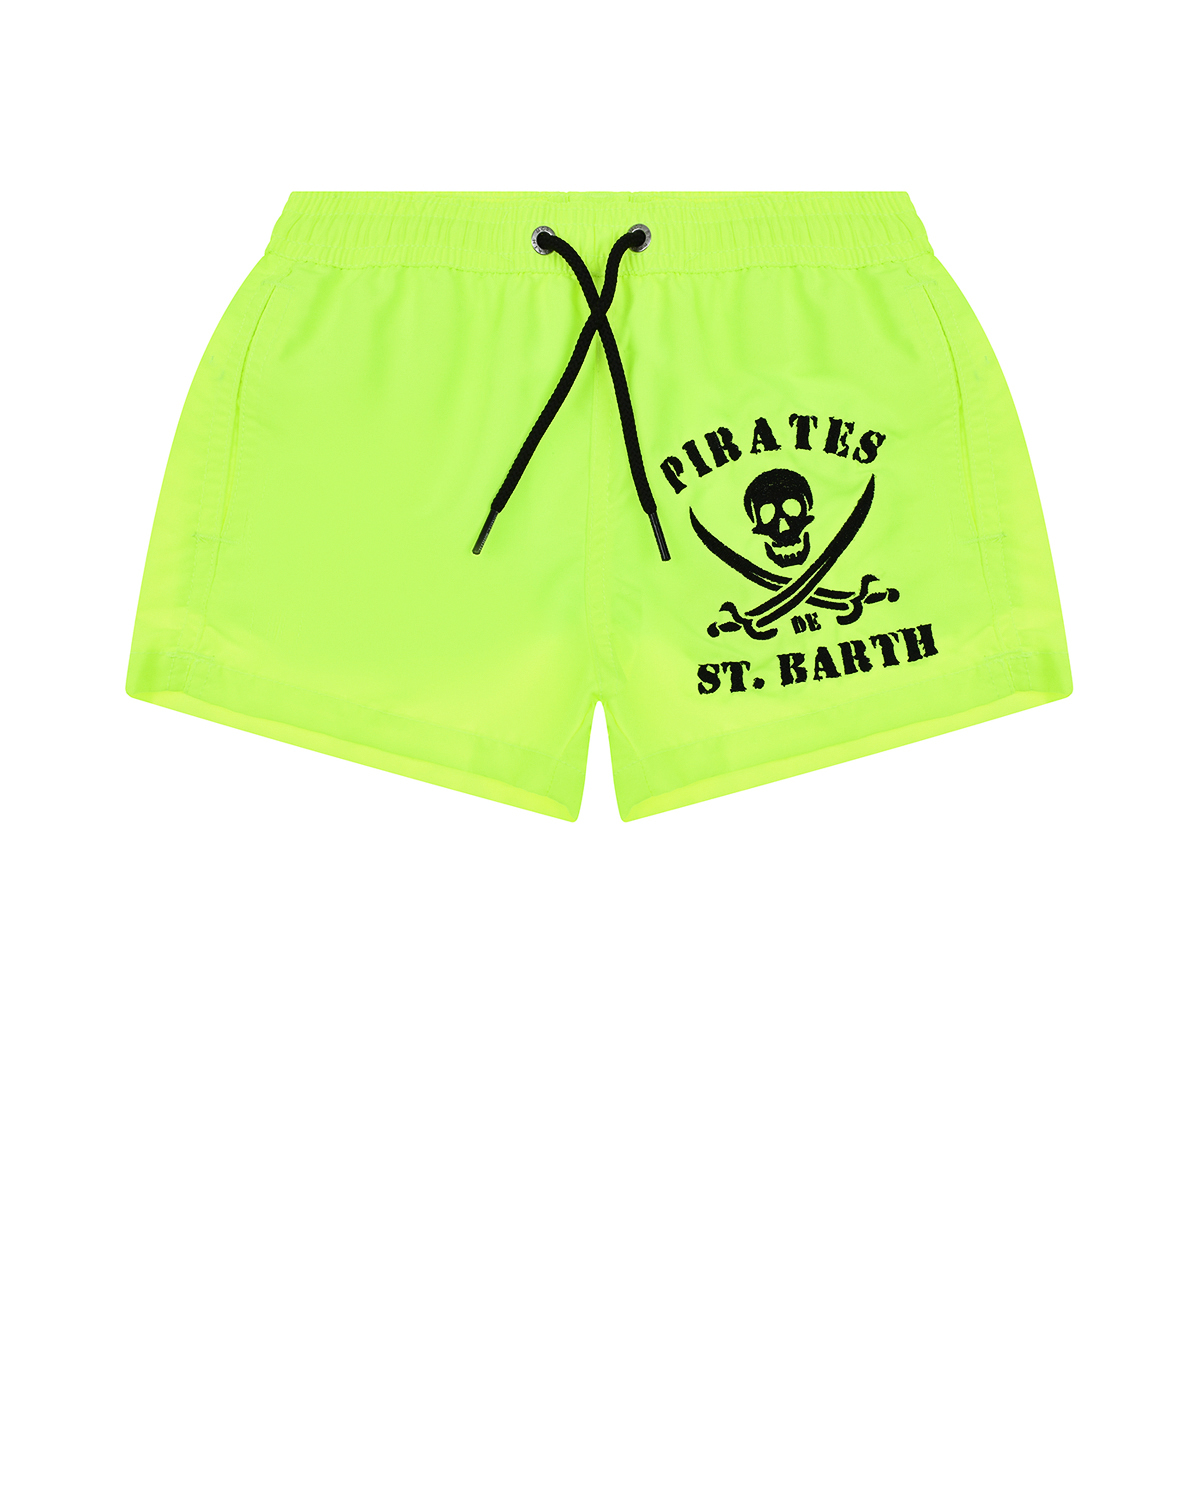 Шорты для купания с принтом "Pirates" Saint Barth детские, размер 116, цвет желтый - фото 1